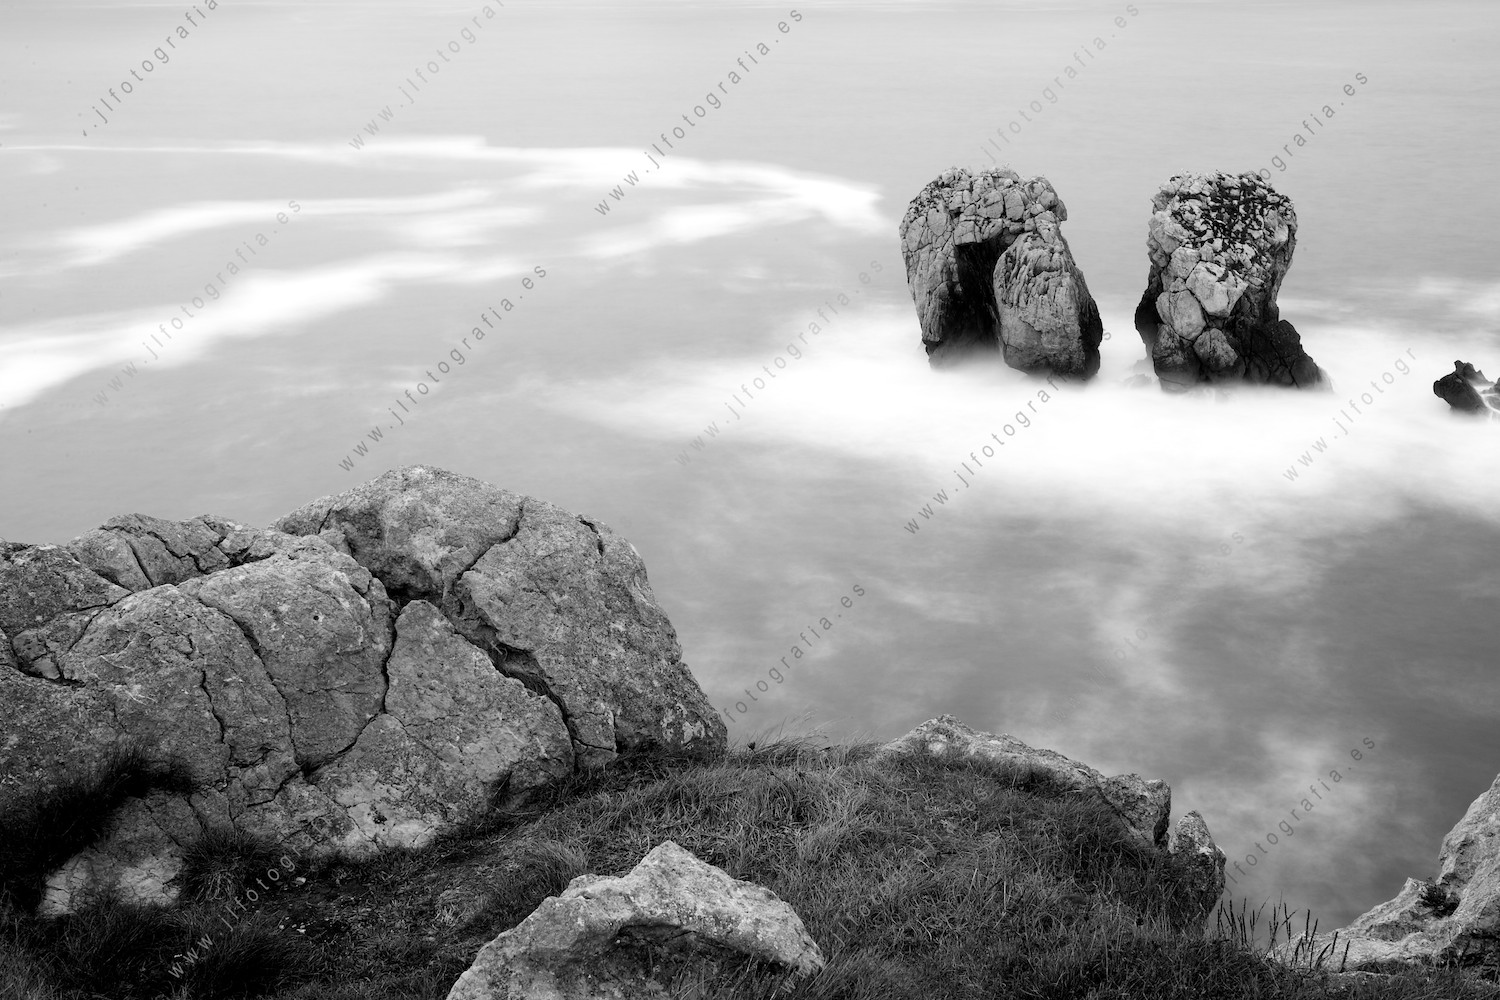 Magdalena, así se denomina a este urro de lacosta quebrada en Liencres, Cantabria. Es una formación rocosa muy bonita.